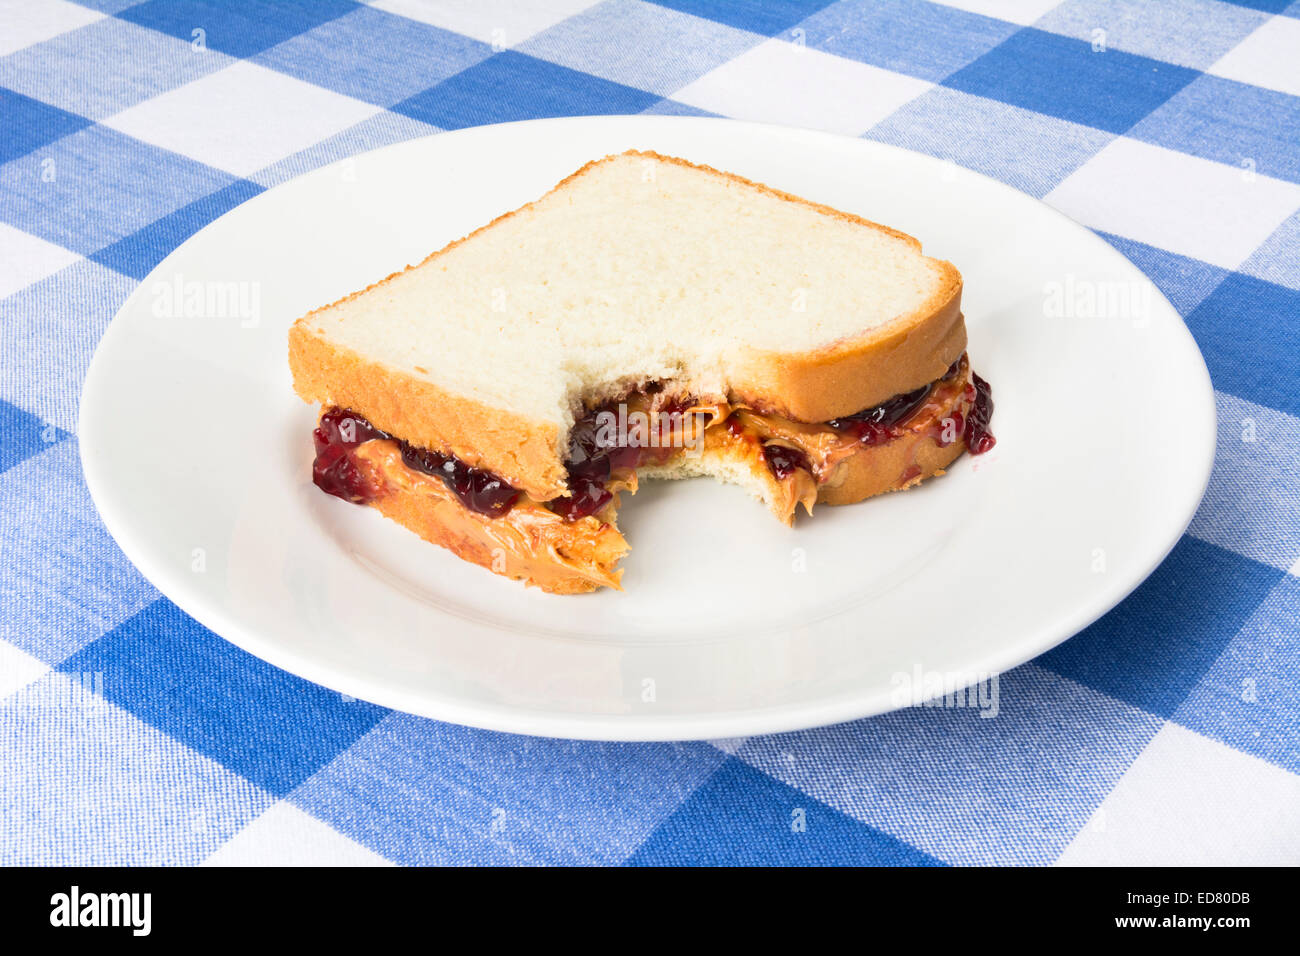 Un delicioso sándwich de mantequilla de maní y mermelada con mermelada de uva tiene una mordedura sacado de él durante la hora del almuerzo. Foto de stock